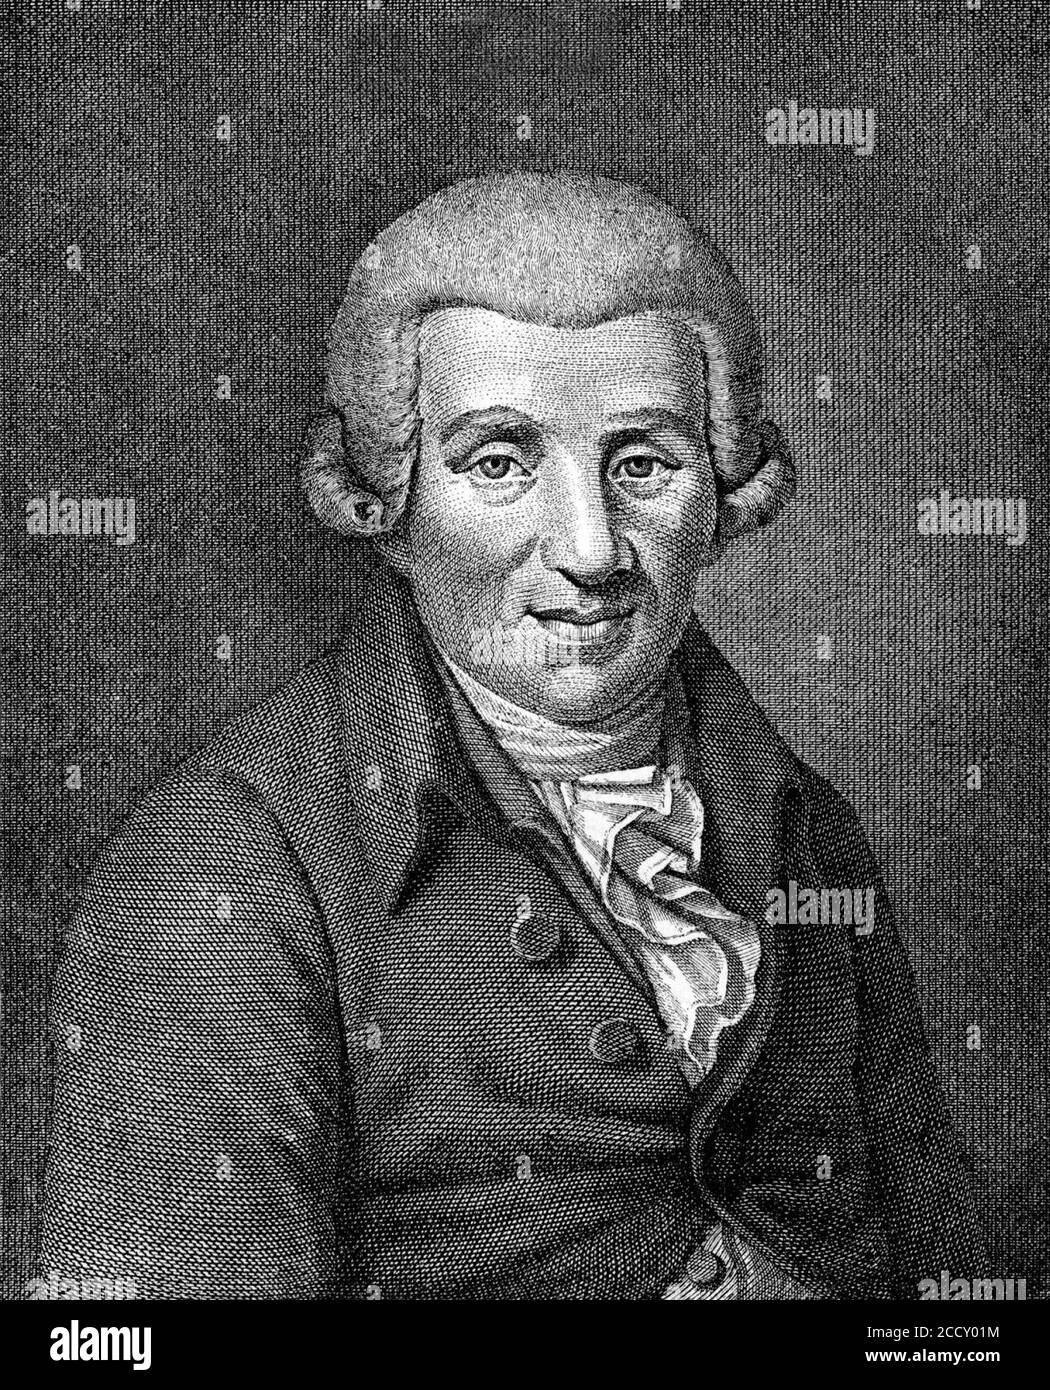 Johann Wilhelm Ludwig Gleim. Stock Photo